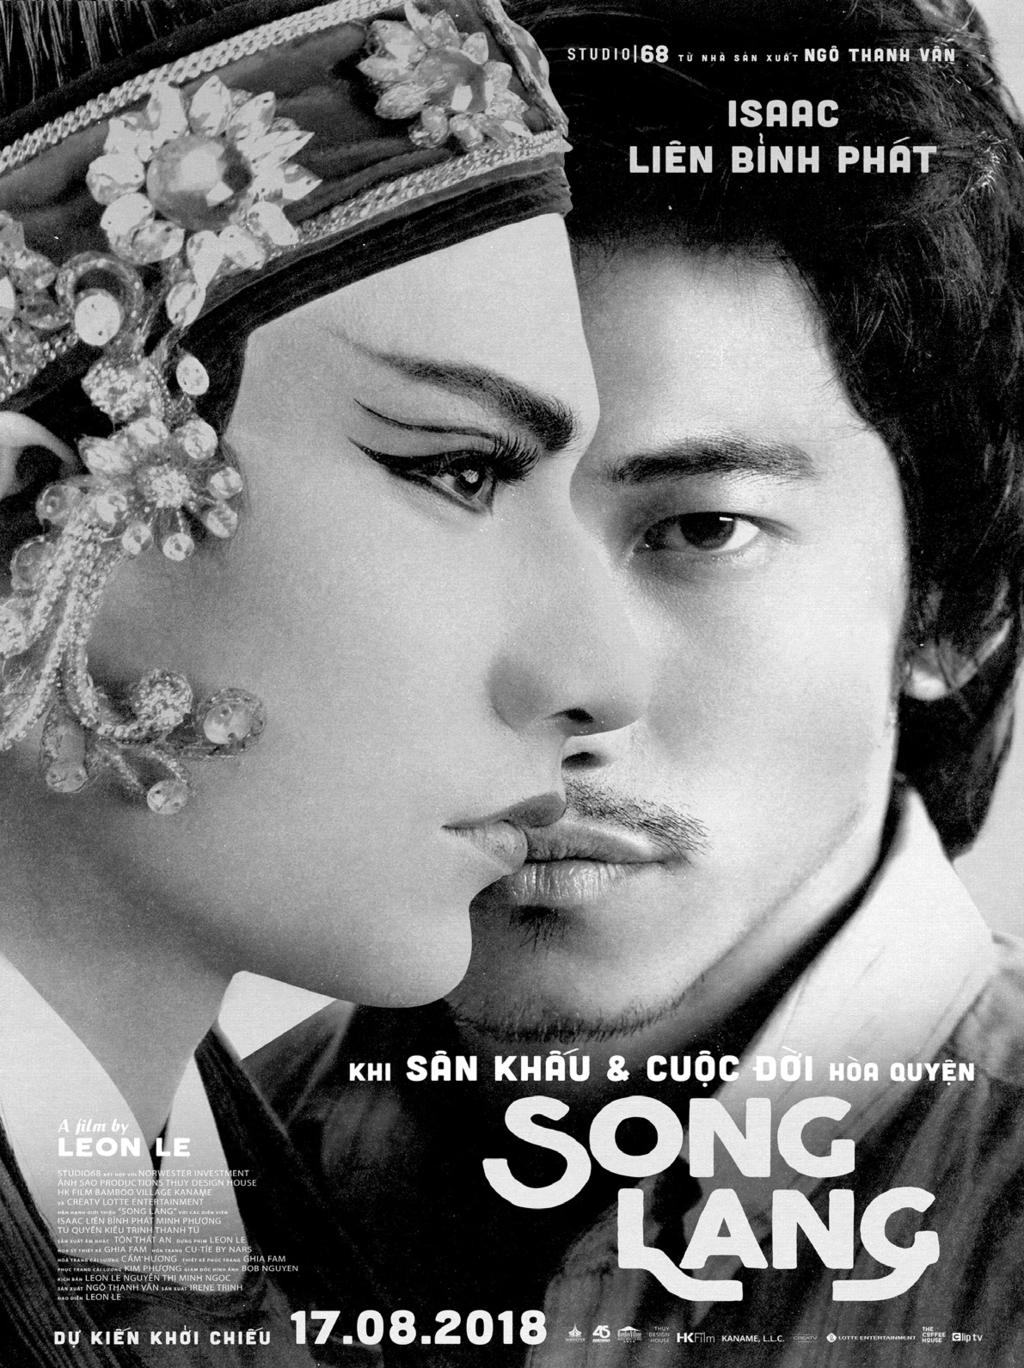 8 vanhoaplvn@gmail.com Song Lang - tác phẩm điện ảnh thiên về nghệ thuật và Chàng vợ của em - bộ phim xu hướng thị trường được tung ra rạp gần như cùng một thời điểm.